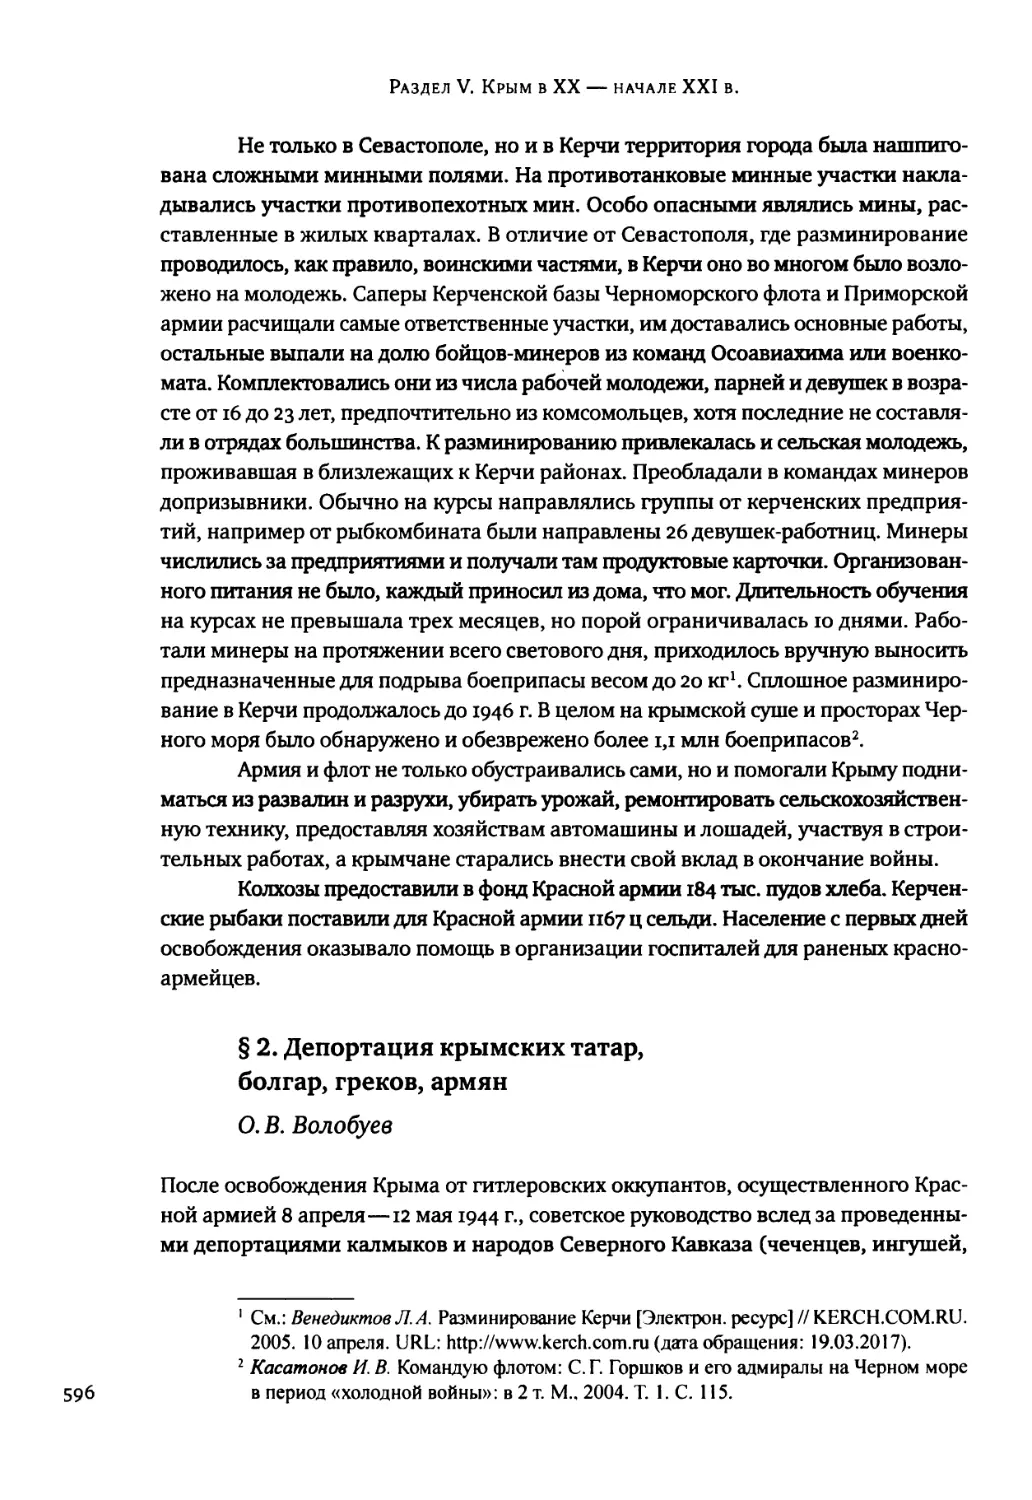 § 2. Депортация крымских татар, болгар, греков, армян